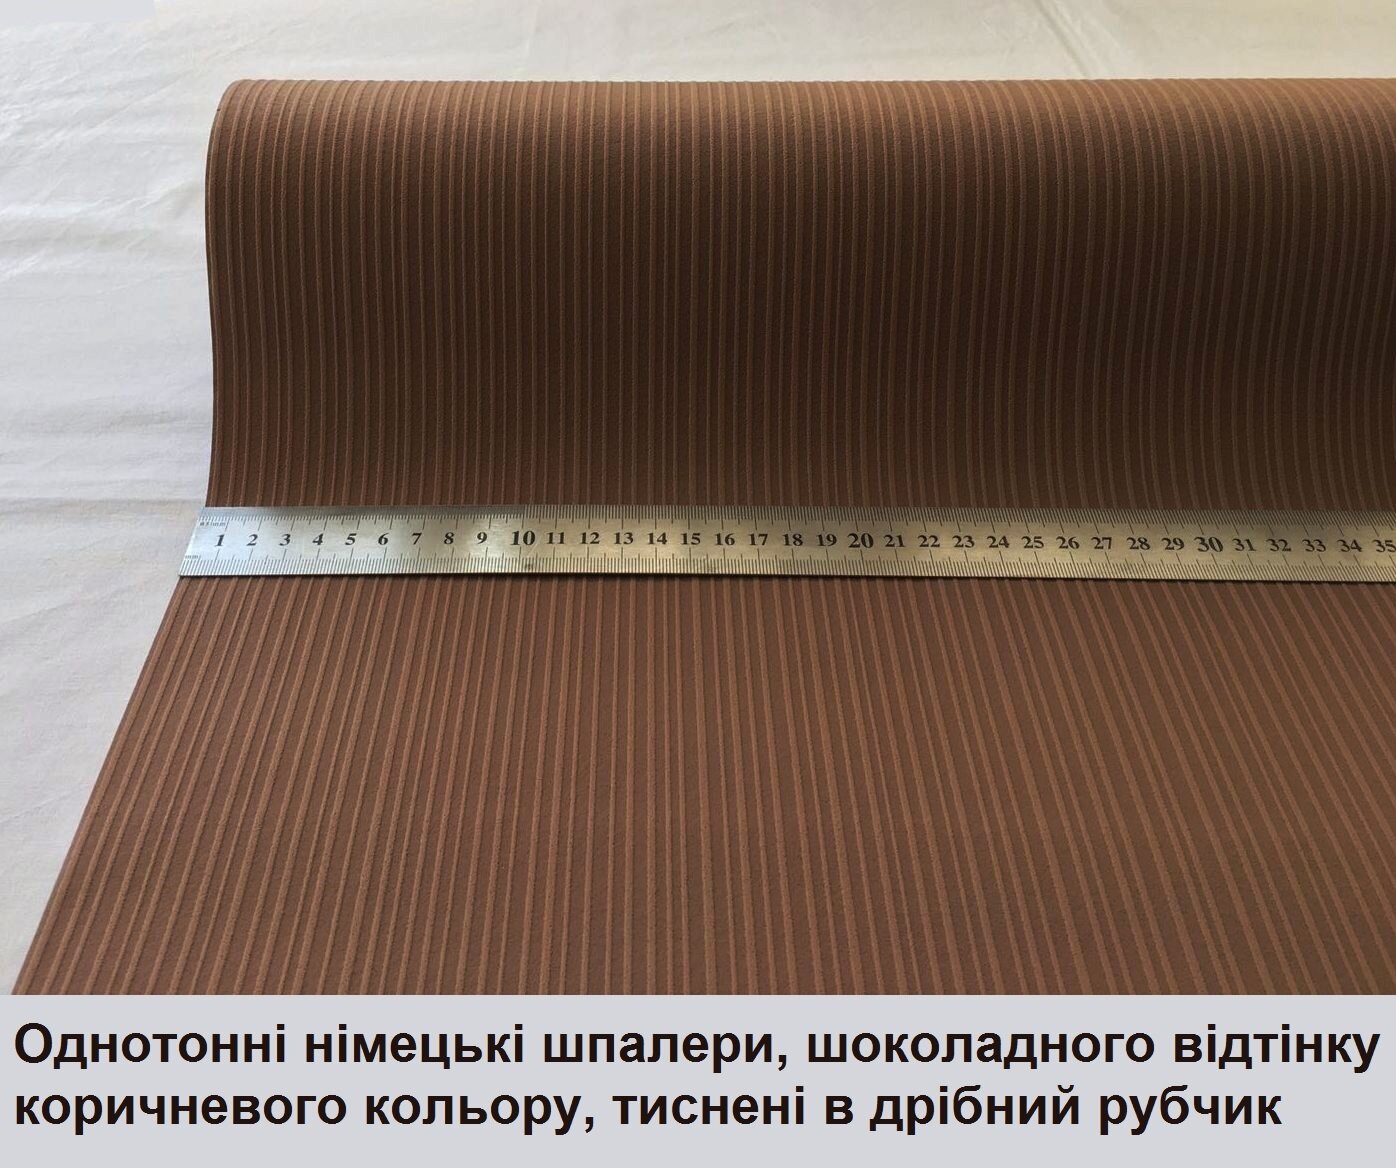 Однотонні та однокольорові німецькі шпалери 95762-1, коричневого кольору, насиченого шоколадного відтінку, тиснені в рубчик